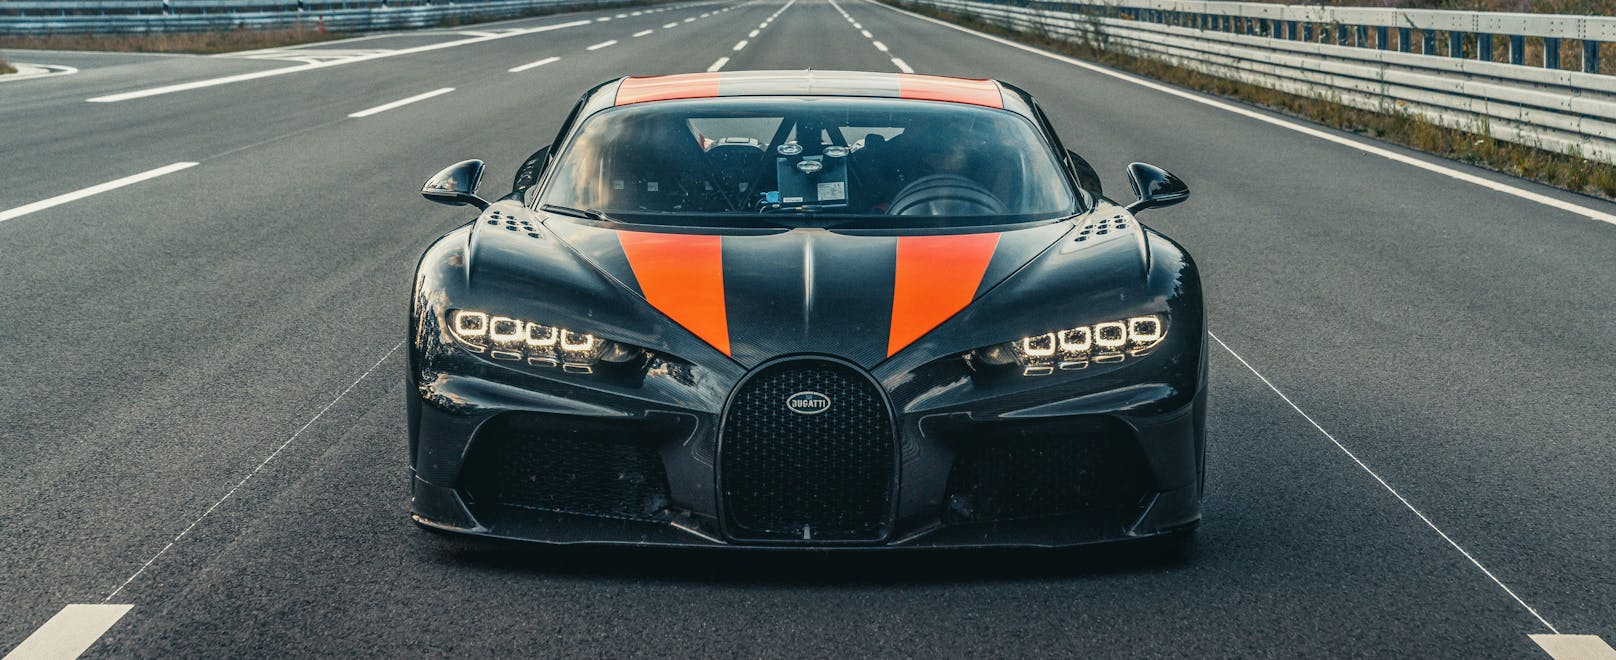 Dieser Bugatti fetzt mit über 300 Meilen pro Stunde über den Asphalt!